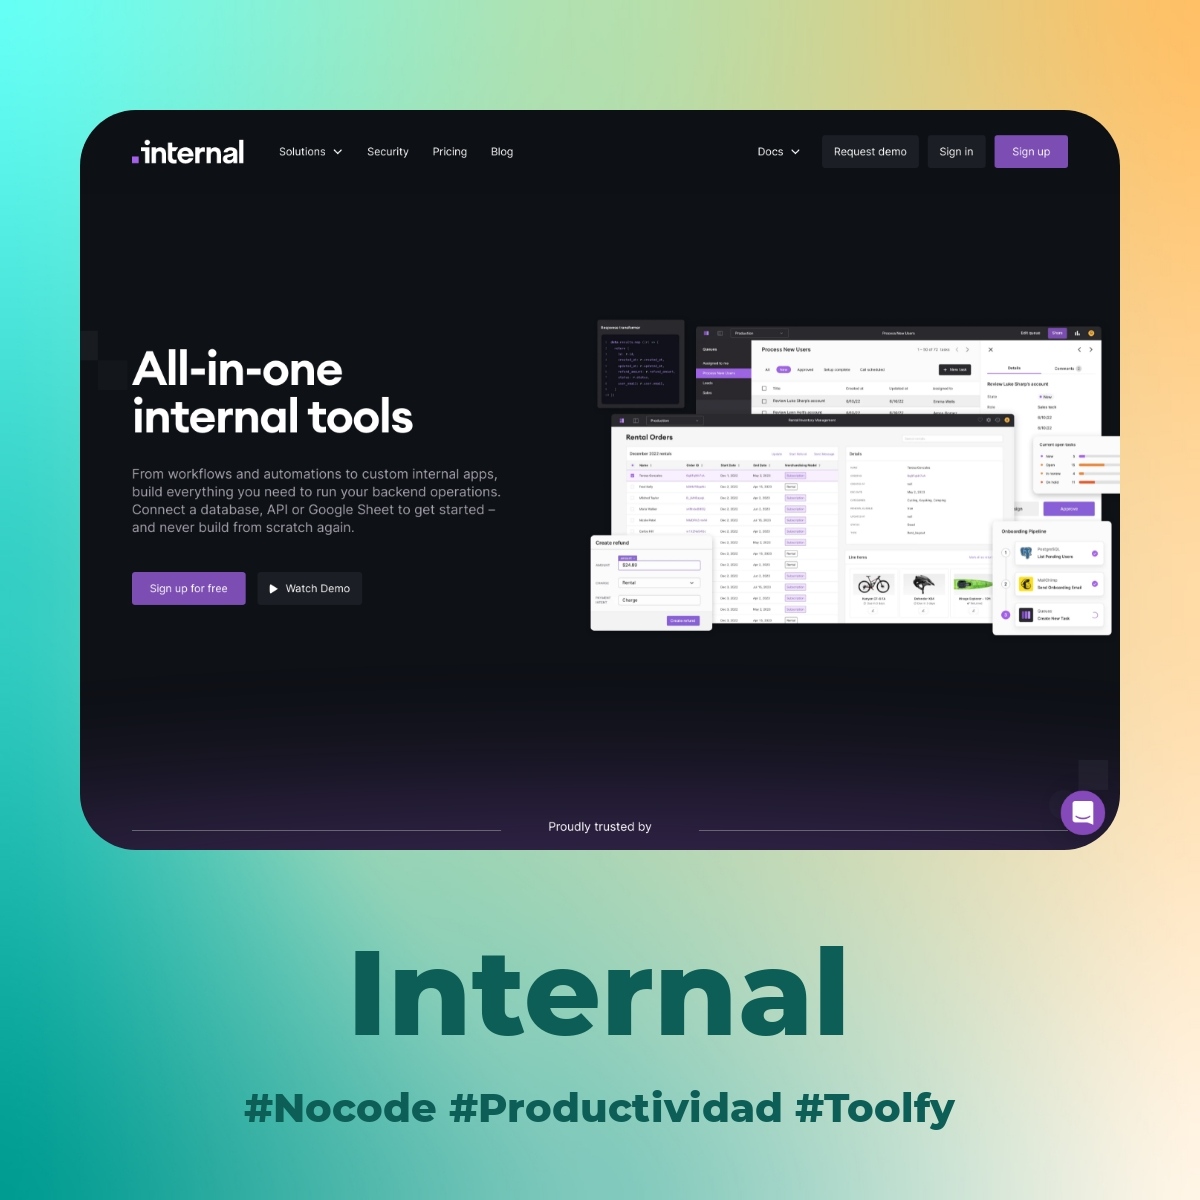 Internal está diseñado para ayudarte a construir apps internas de manera rápida y fácil, sin necesidad de programar. Trabaja sobre tus propios sistemas, APIs y bases de datos existentes para hacer tu trabajo aún más eficiente.

#nocode #nocodetools #nocodeapps #digitaltools